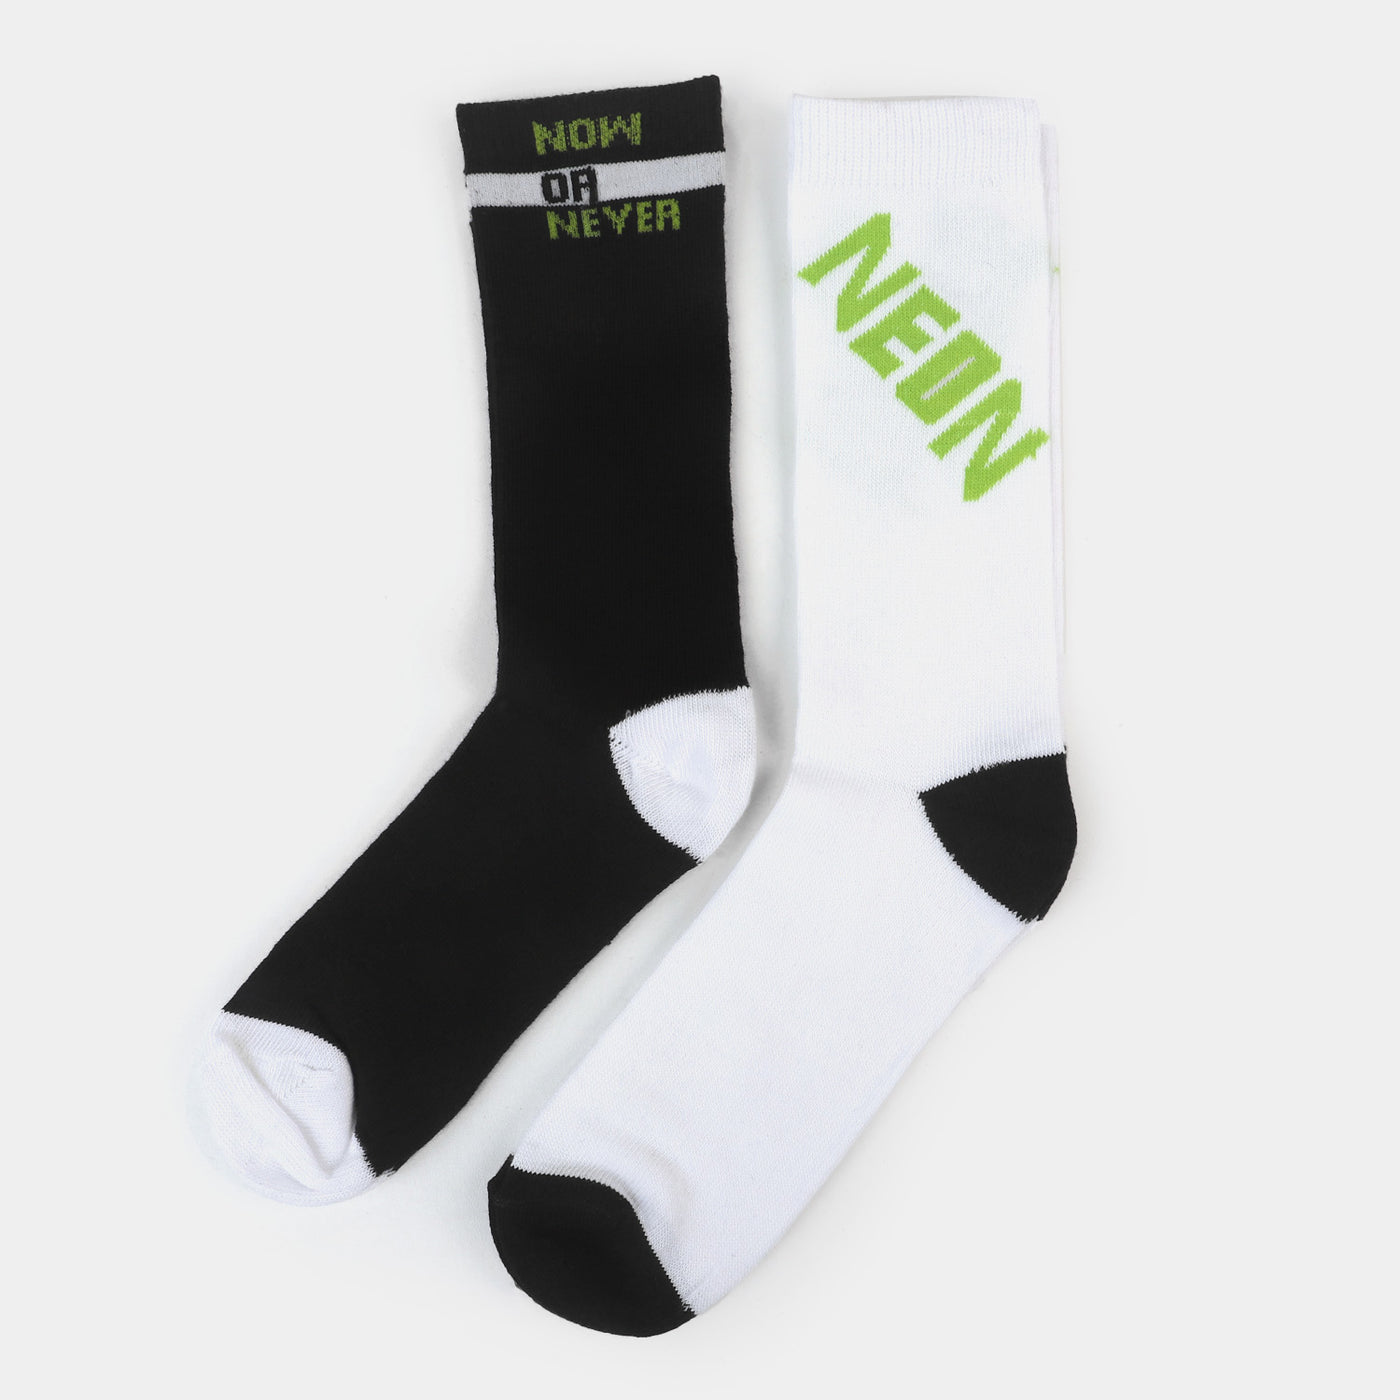 Boys Socks Neon - White/Black